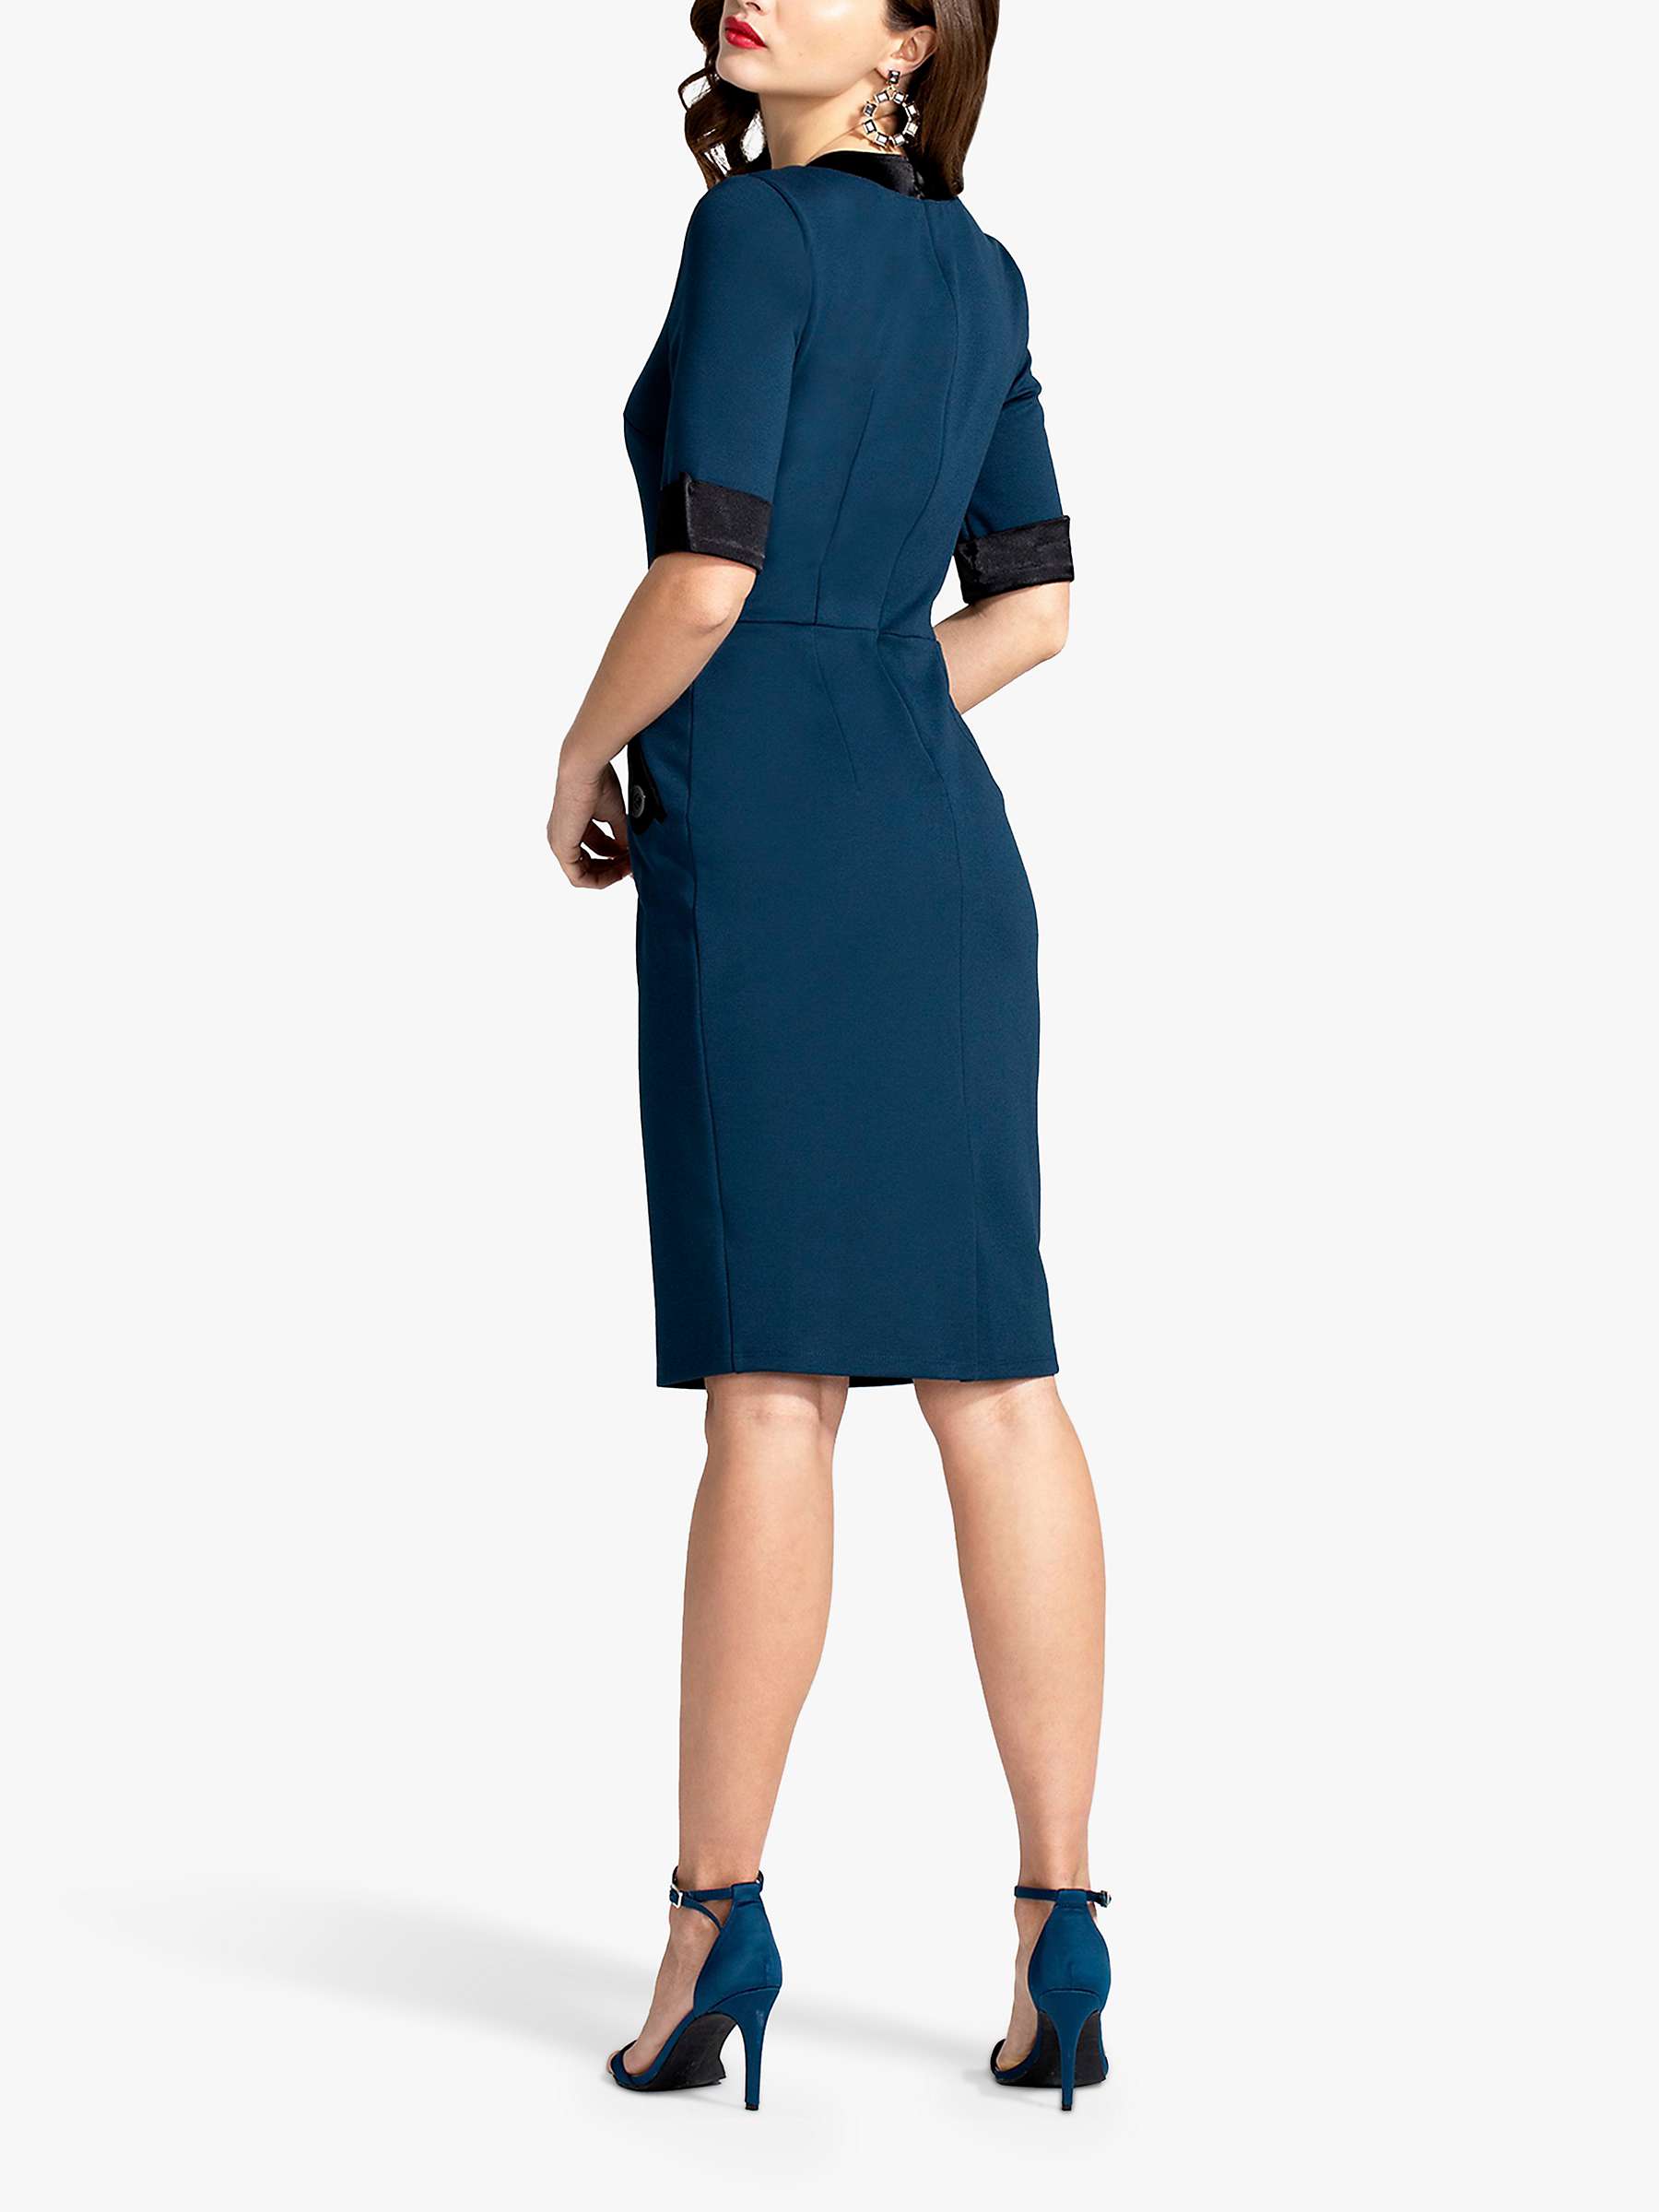 Buy HotSquash Contrast V-Neck Knee Length Dress, Teal Online at johnlewis.com